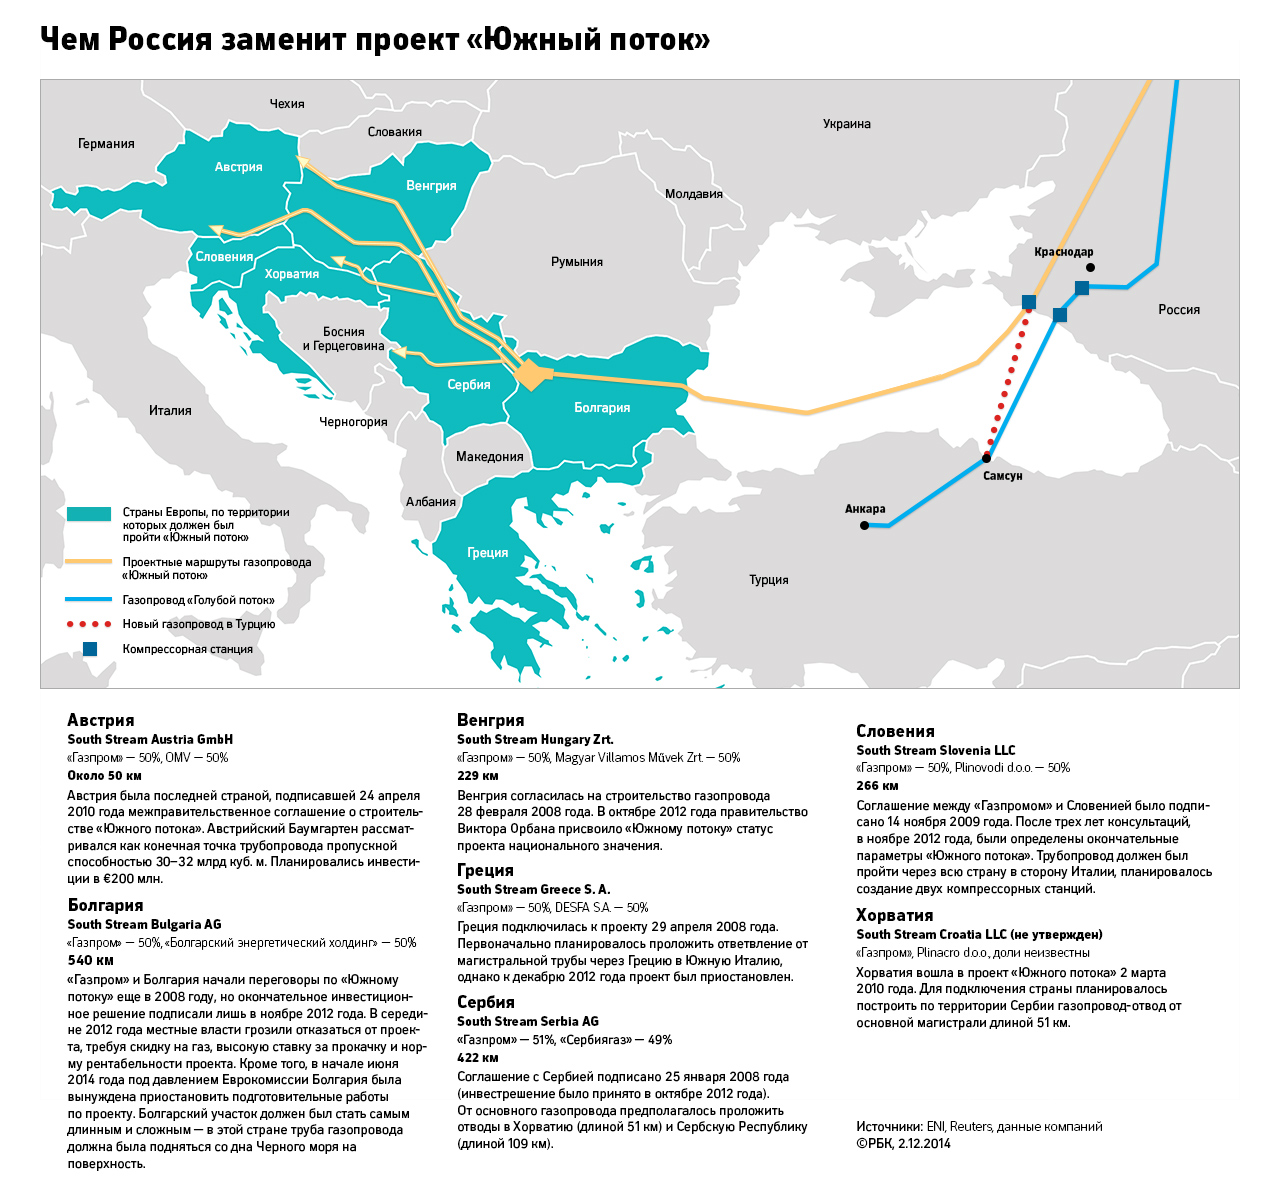 Остановка «Южного потока» застала партнеров «Газпрома» врасплох 